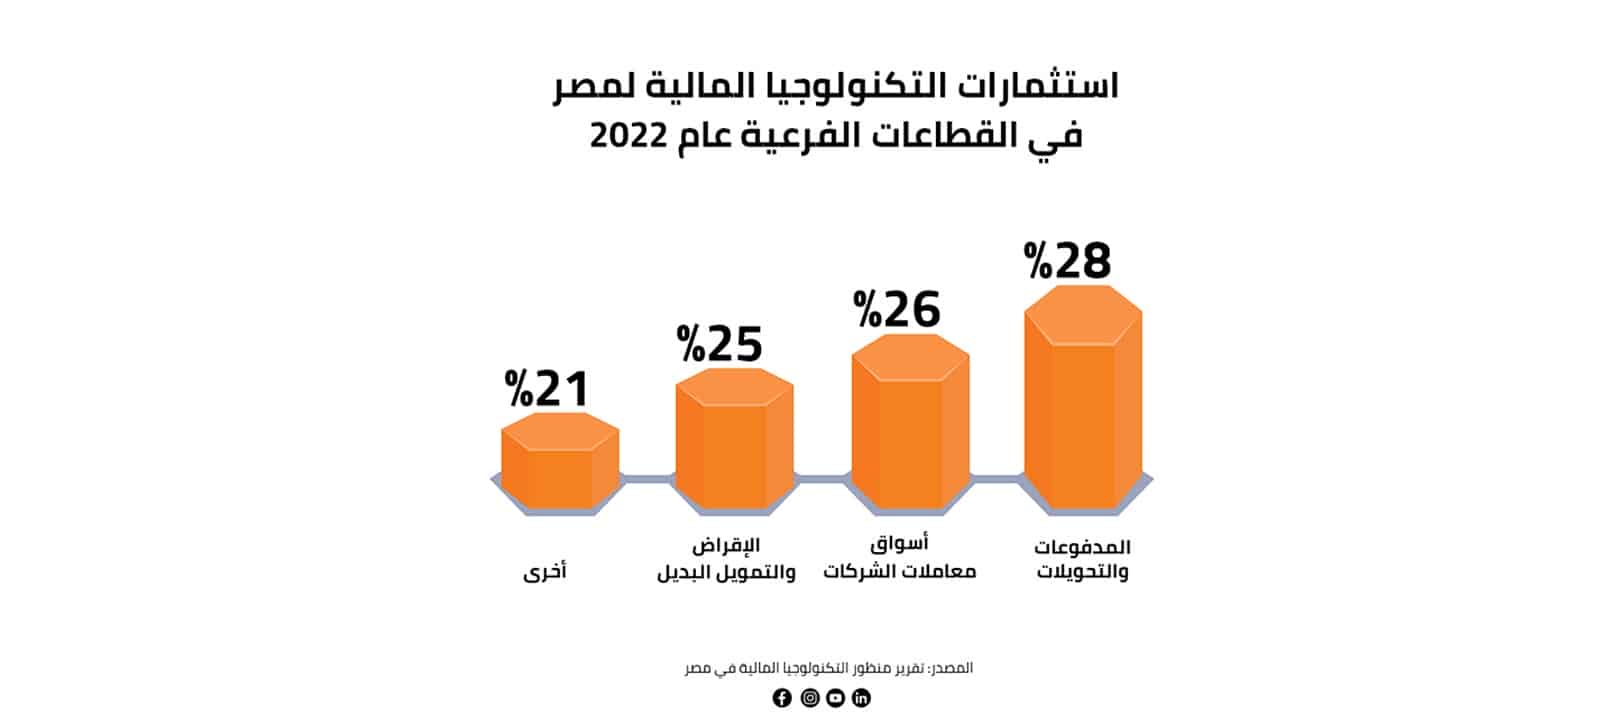 استثمارات التكنولوجيا المالية لمصر في القطاعات الفرعية عام 2022 